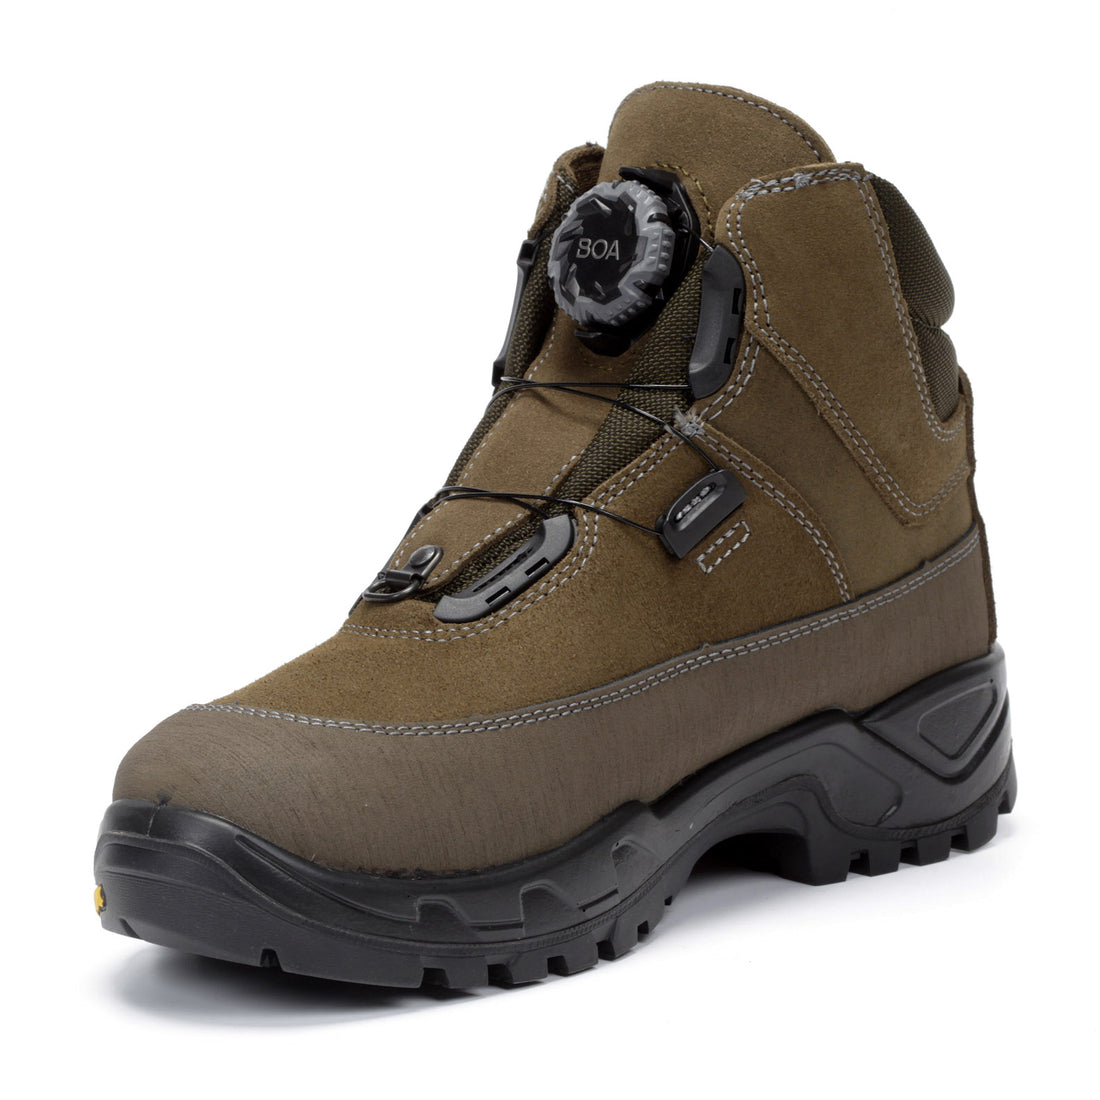 Chiruca Boots Boxer Boa 12 MEN GORE-TEX BOA closing system, Vibram sole,  Hunting